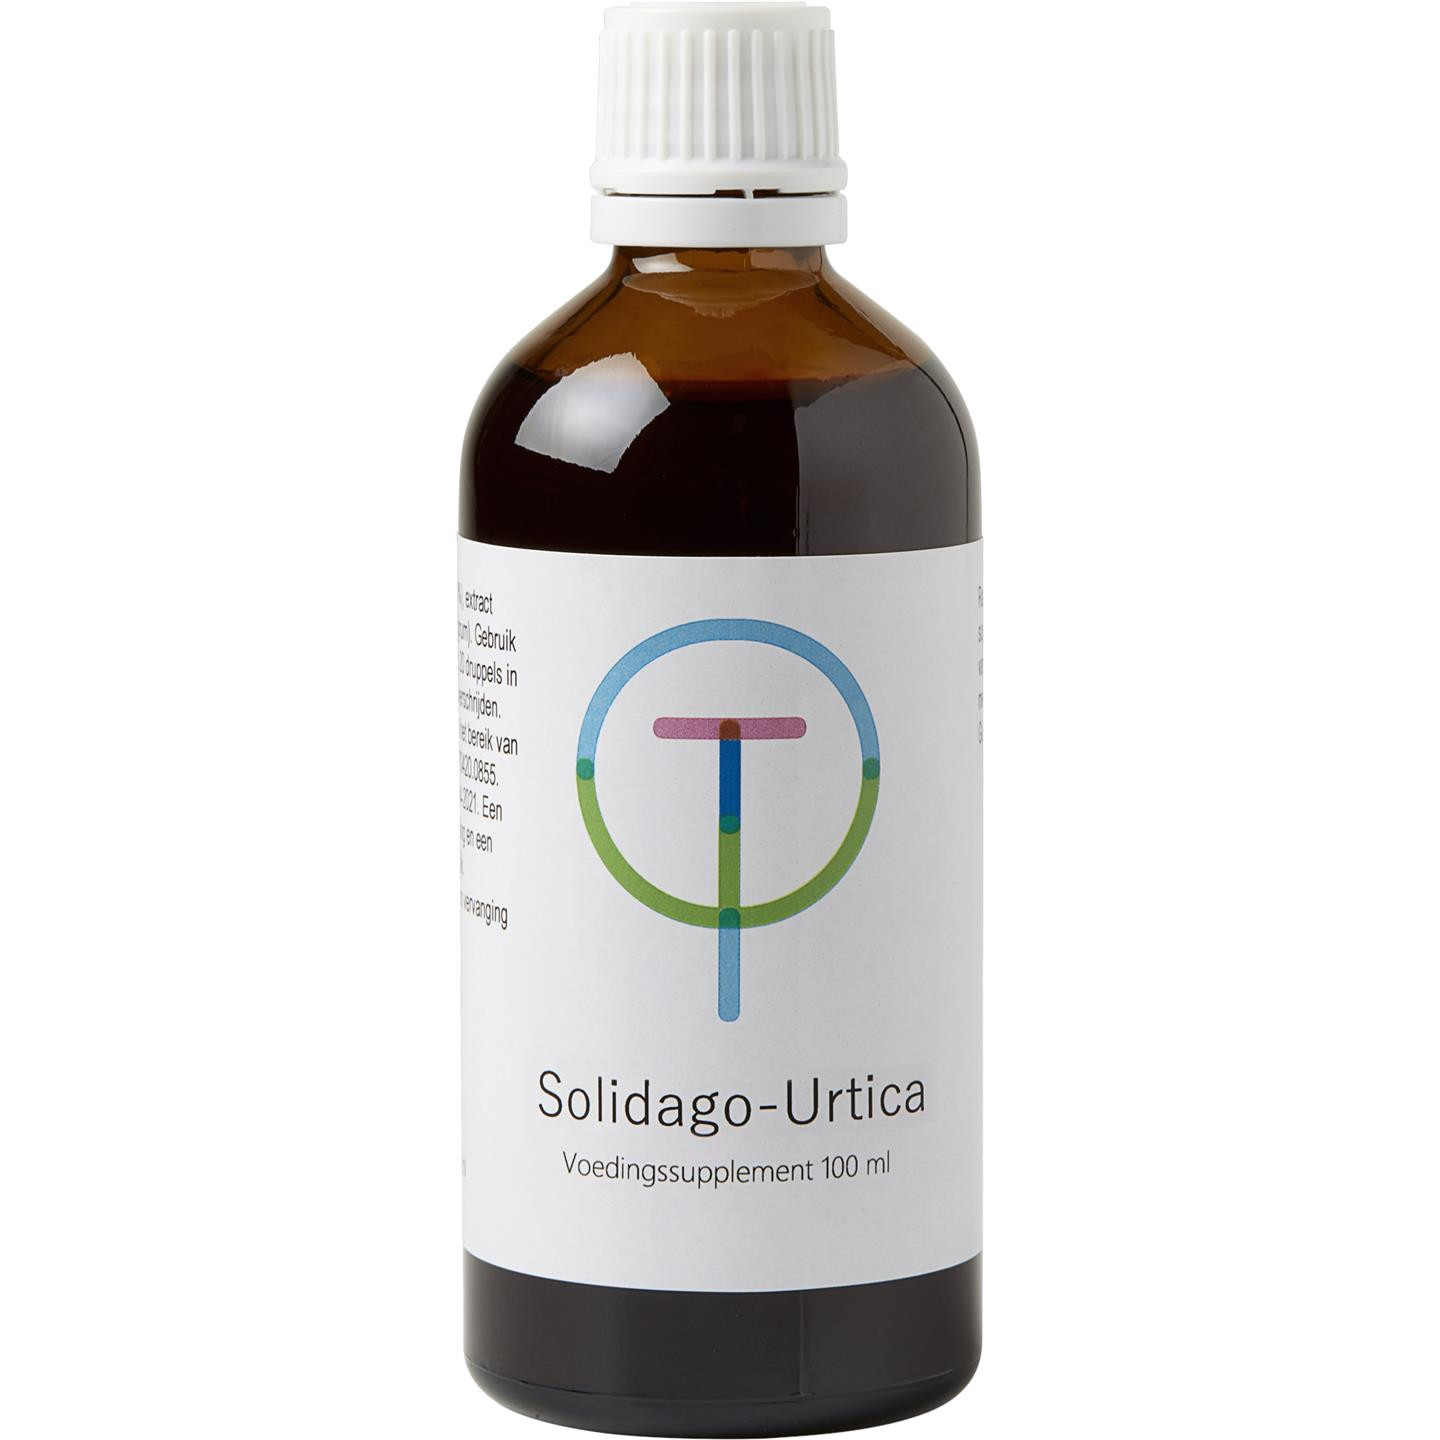 Solidago-Urtica